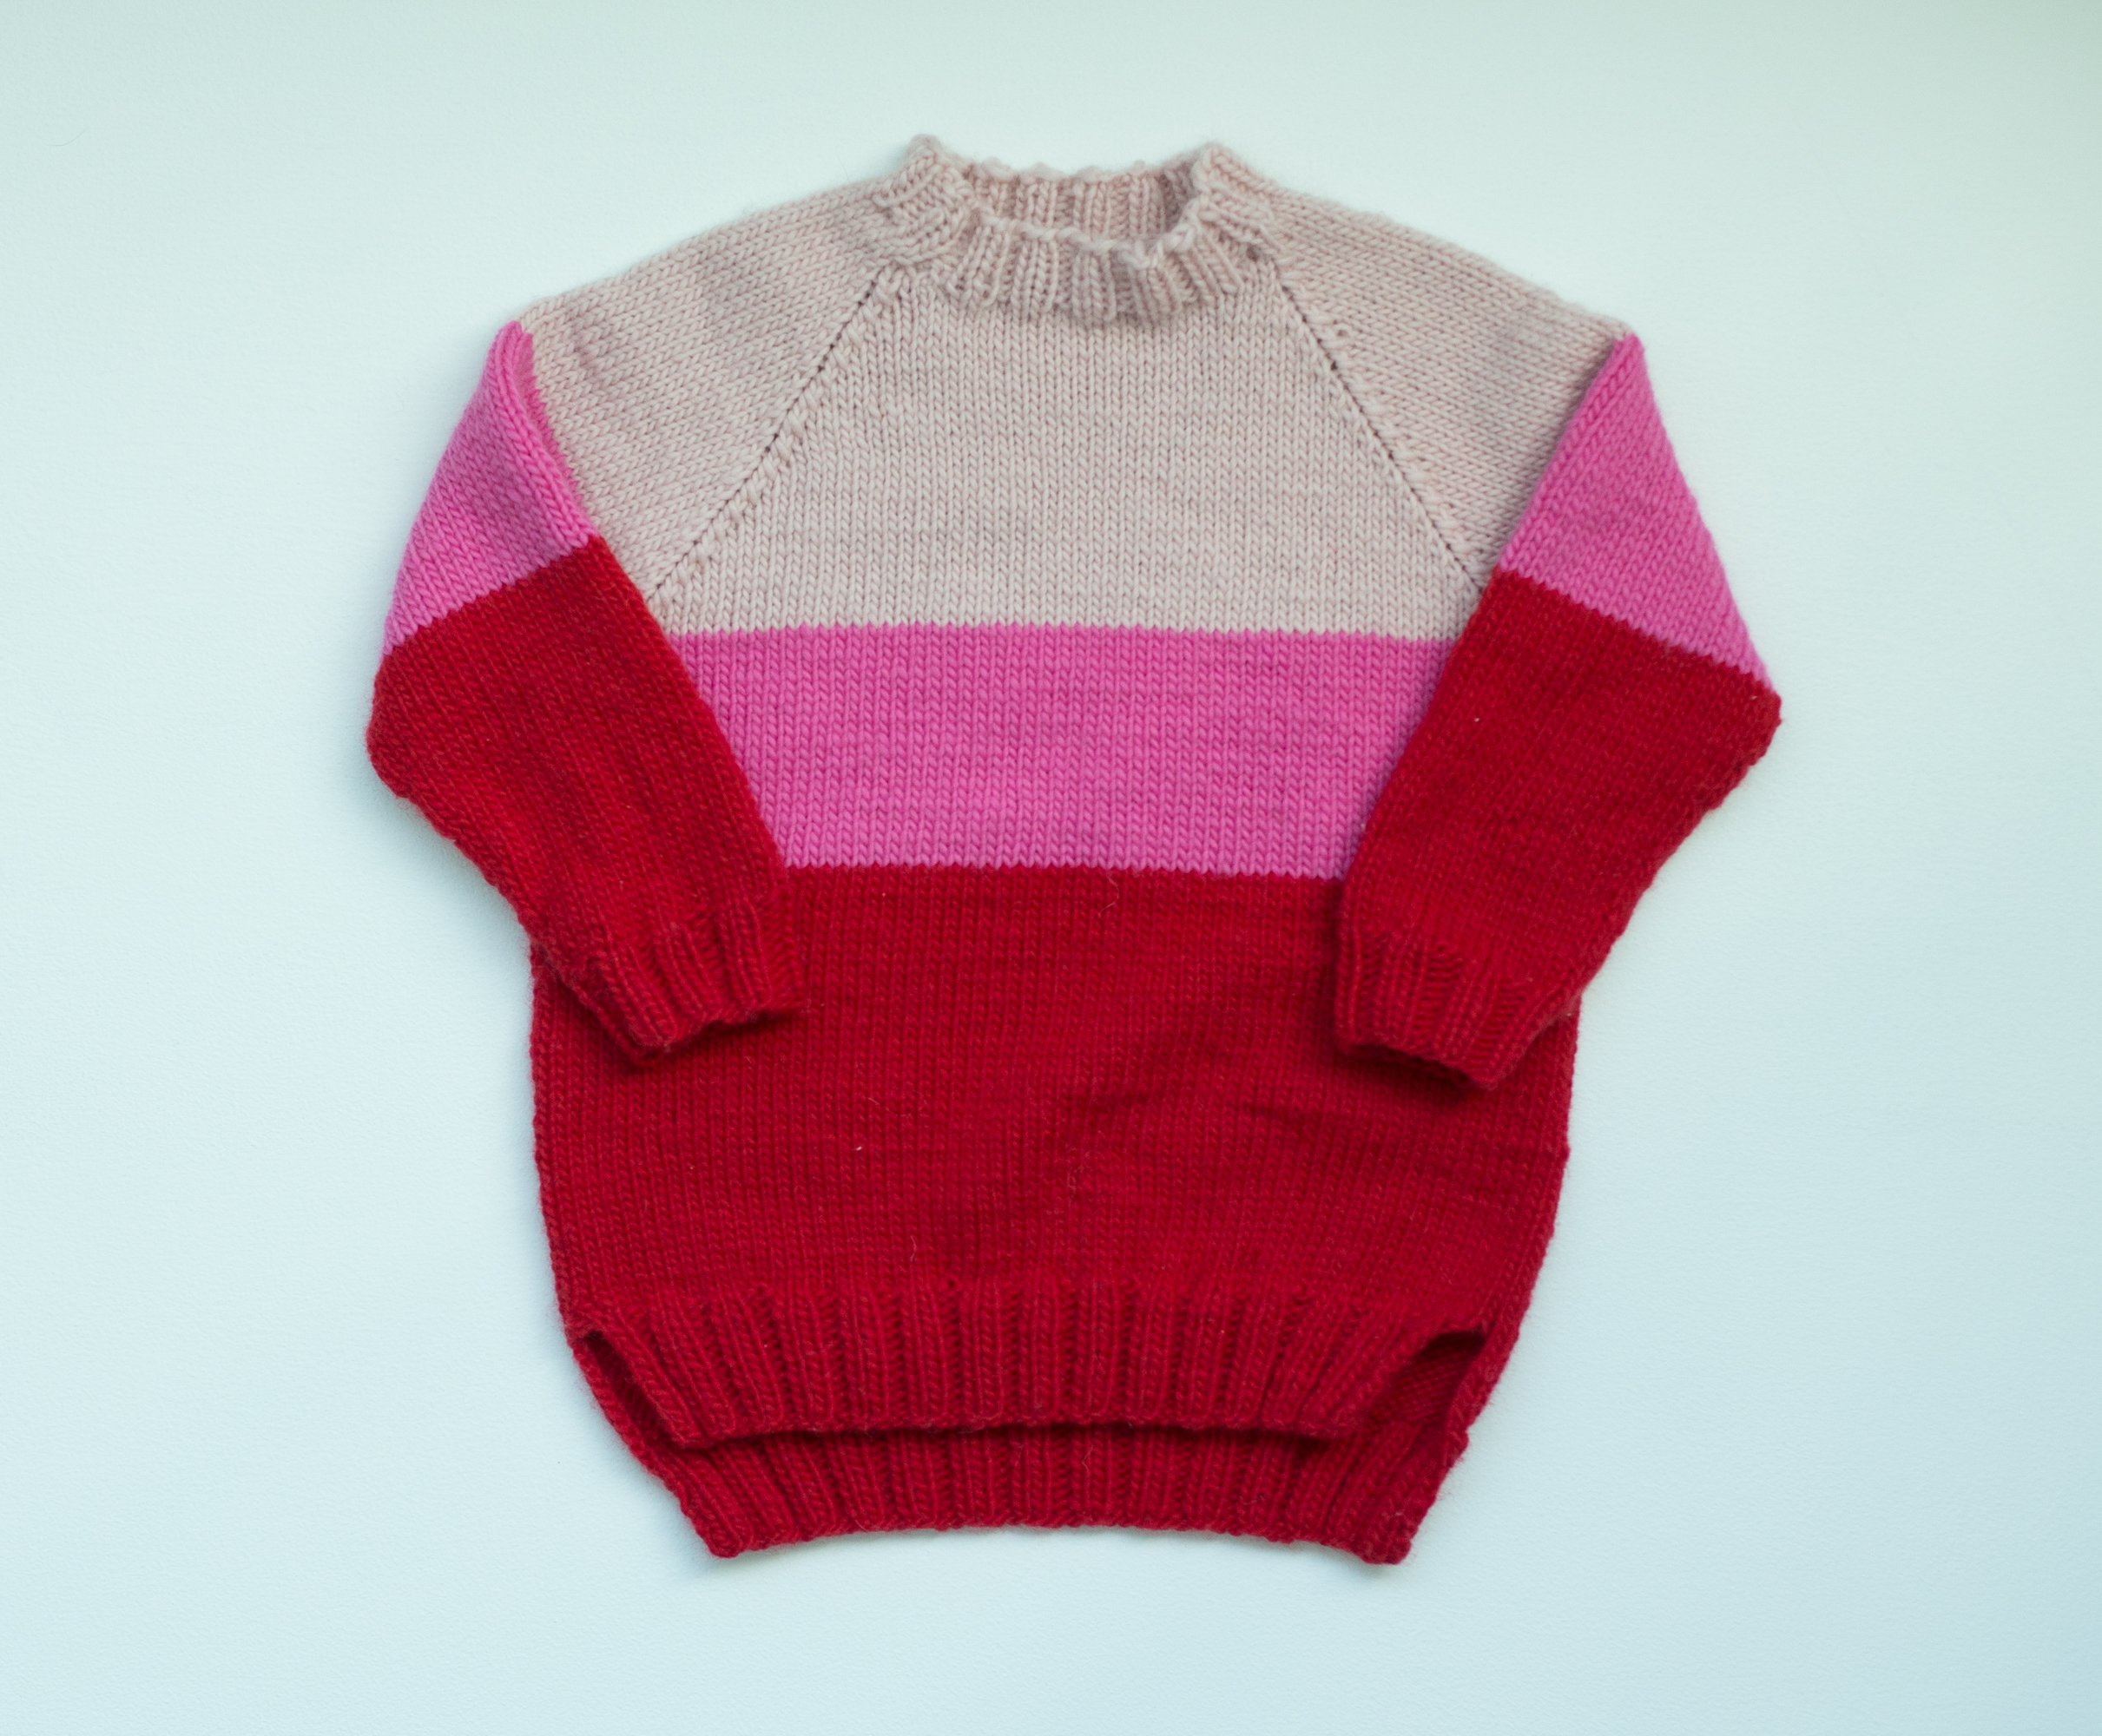 knitting pattern kids raglan sweater - Jubel sweater kids | Knitting kit for kids sweater- by HipKnitShop - 12/02/2018